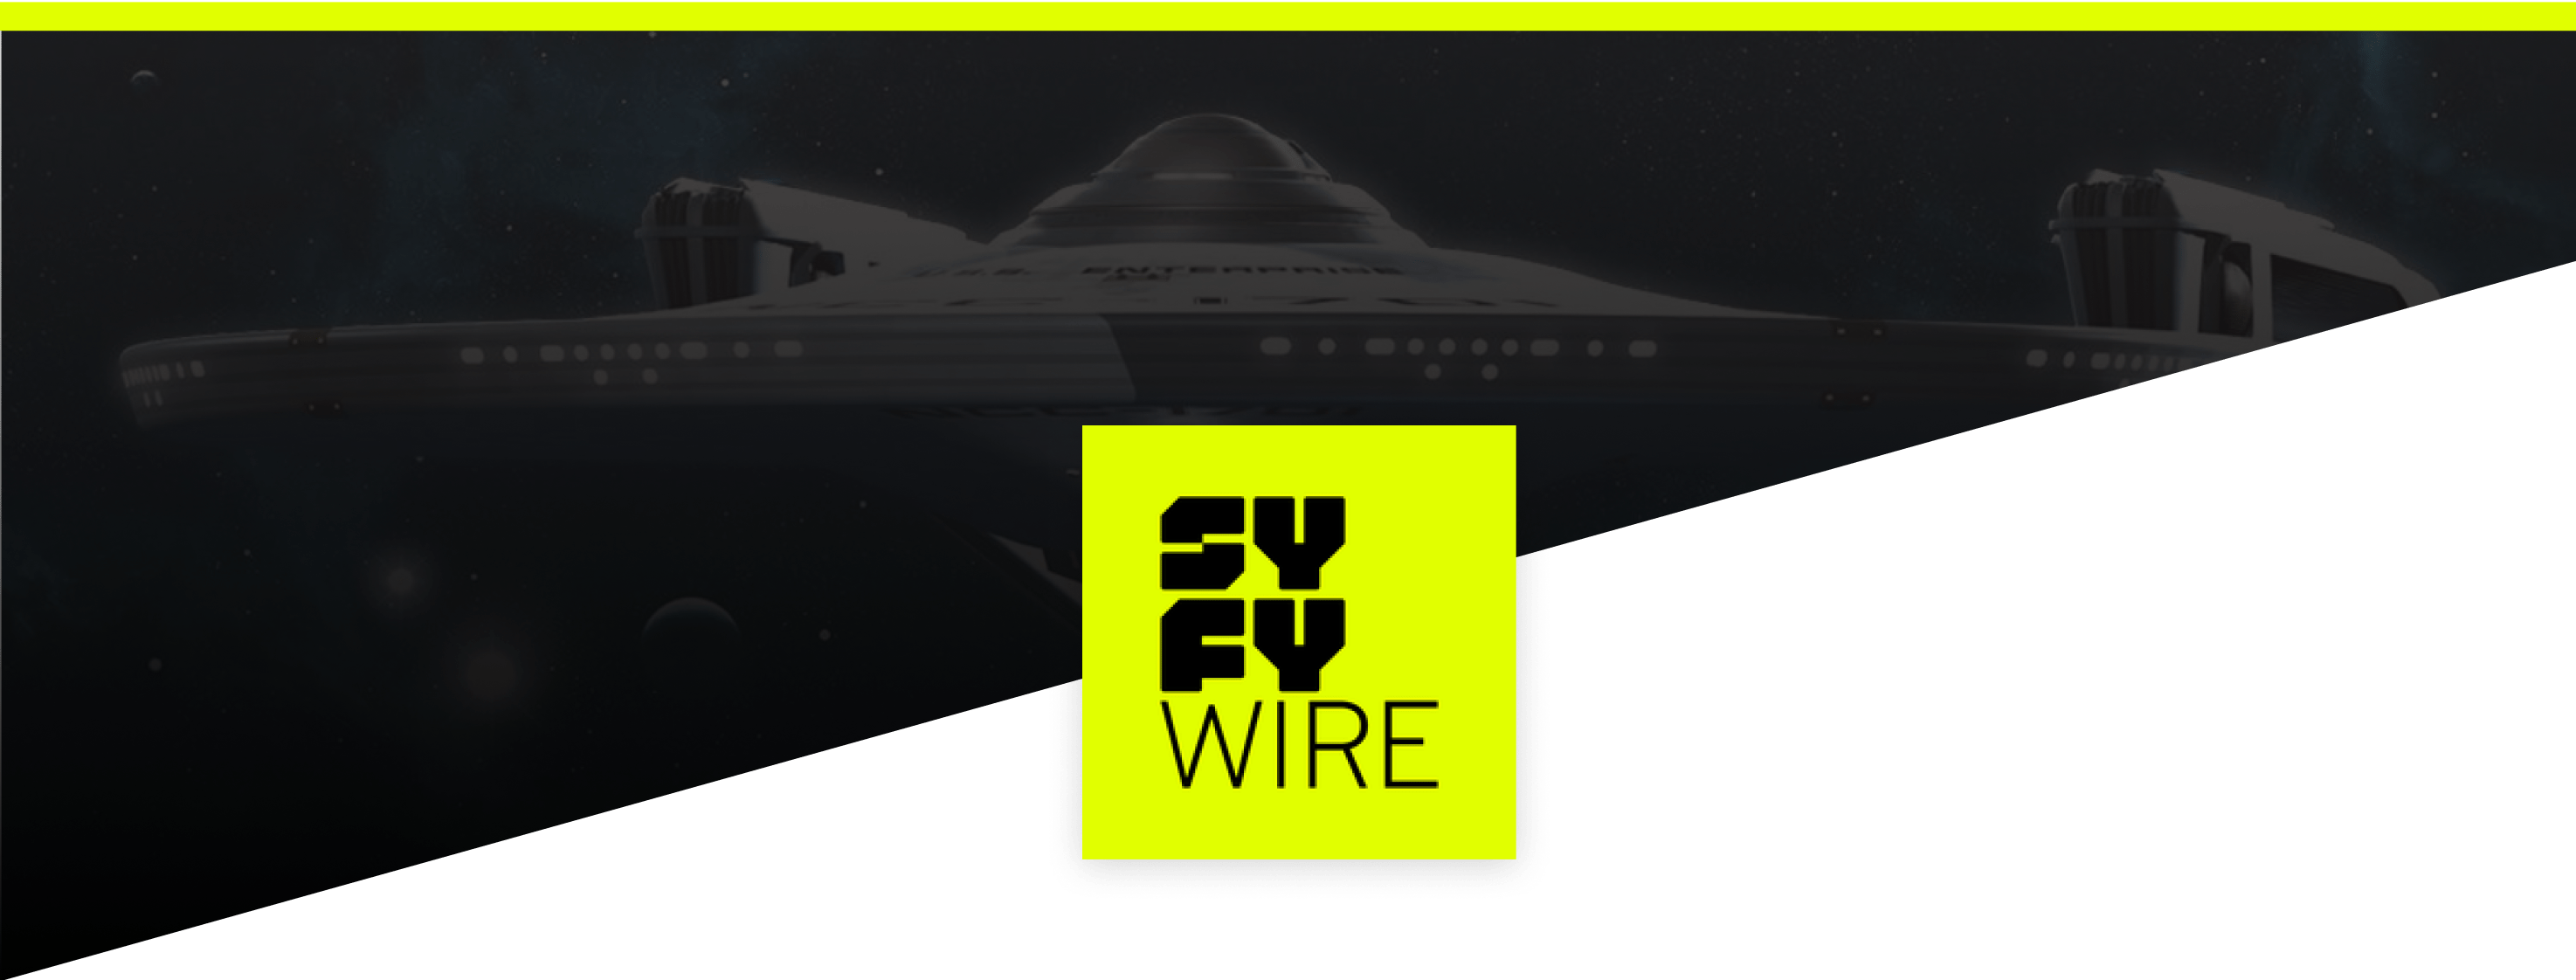 Logo SyFy Wire référence ineat